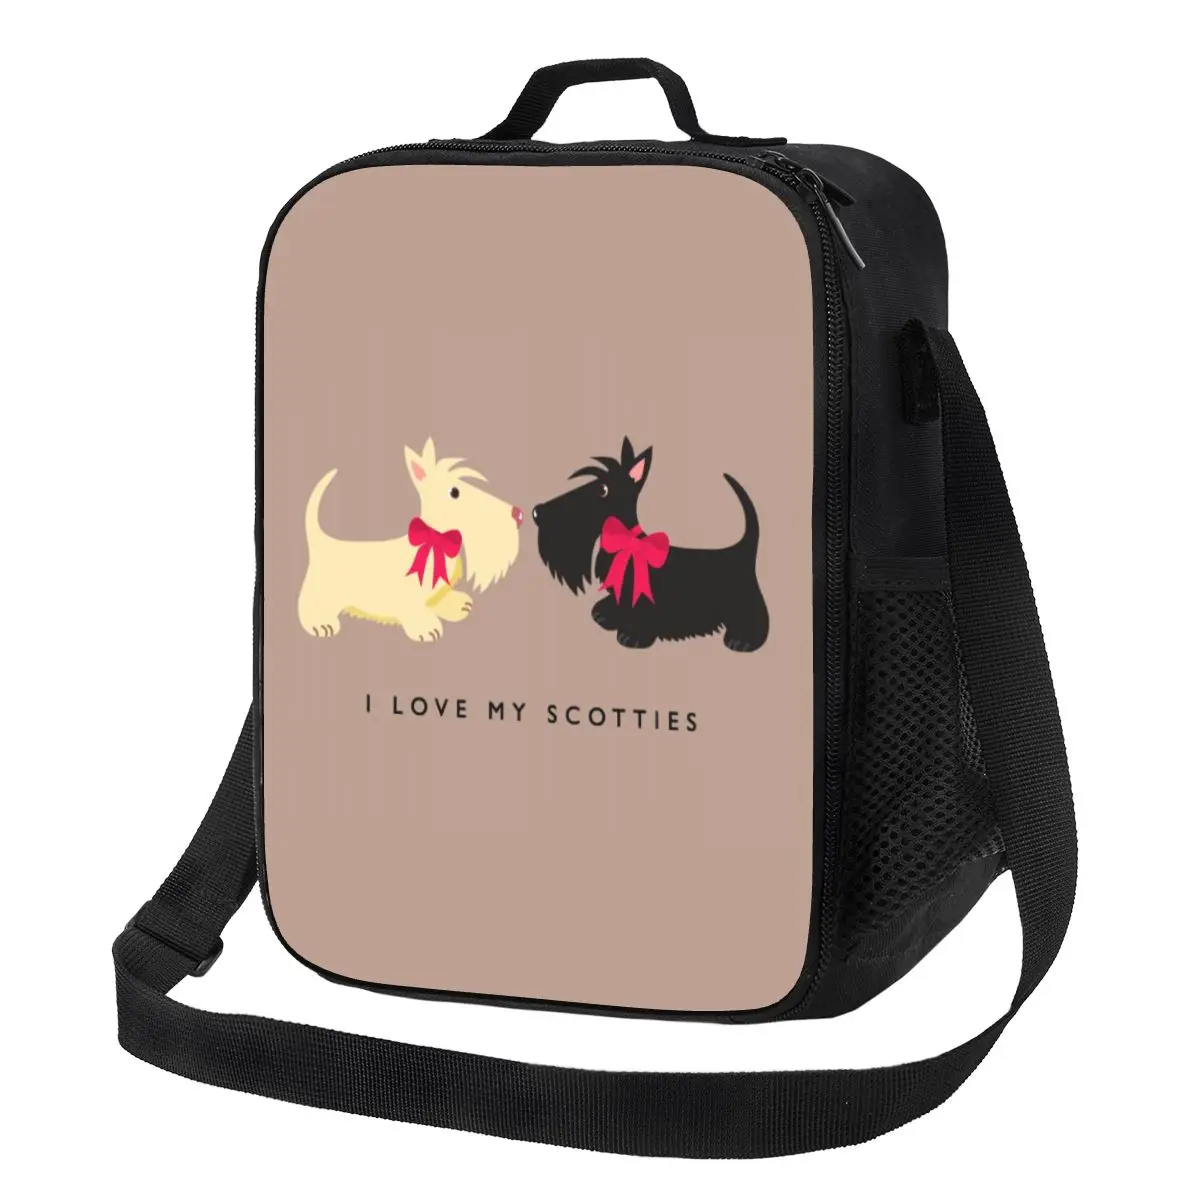 I Love My Scotties Изолированная сумка для ланча для женщин с шотландским терьером, термоохладитель для собак, коробка для бенто, офис, работа, школа